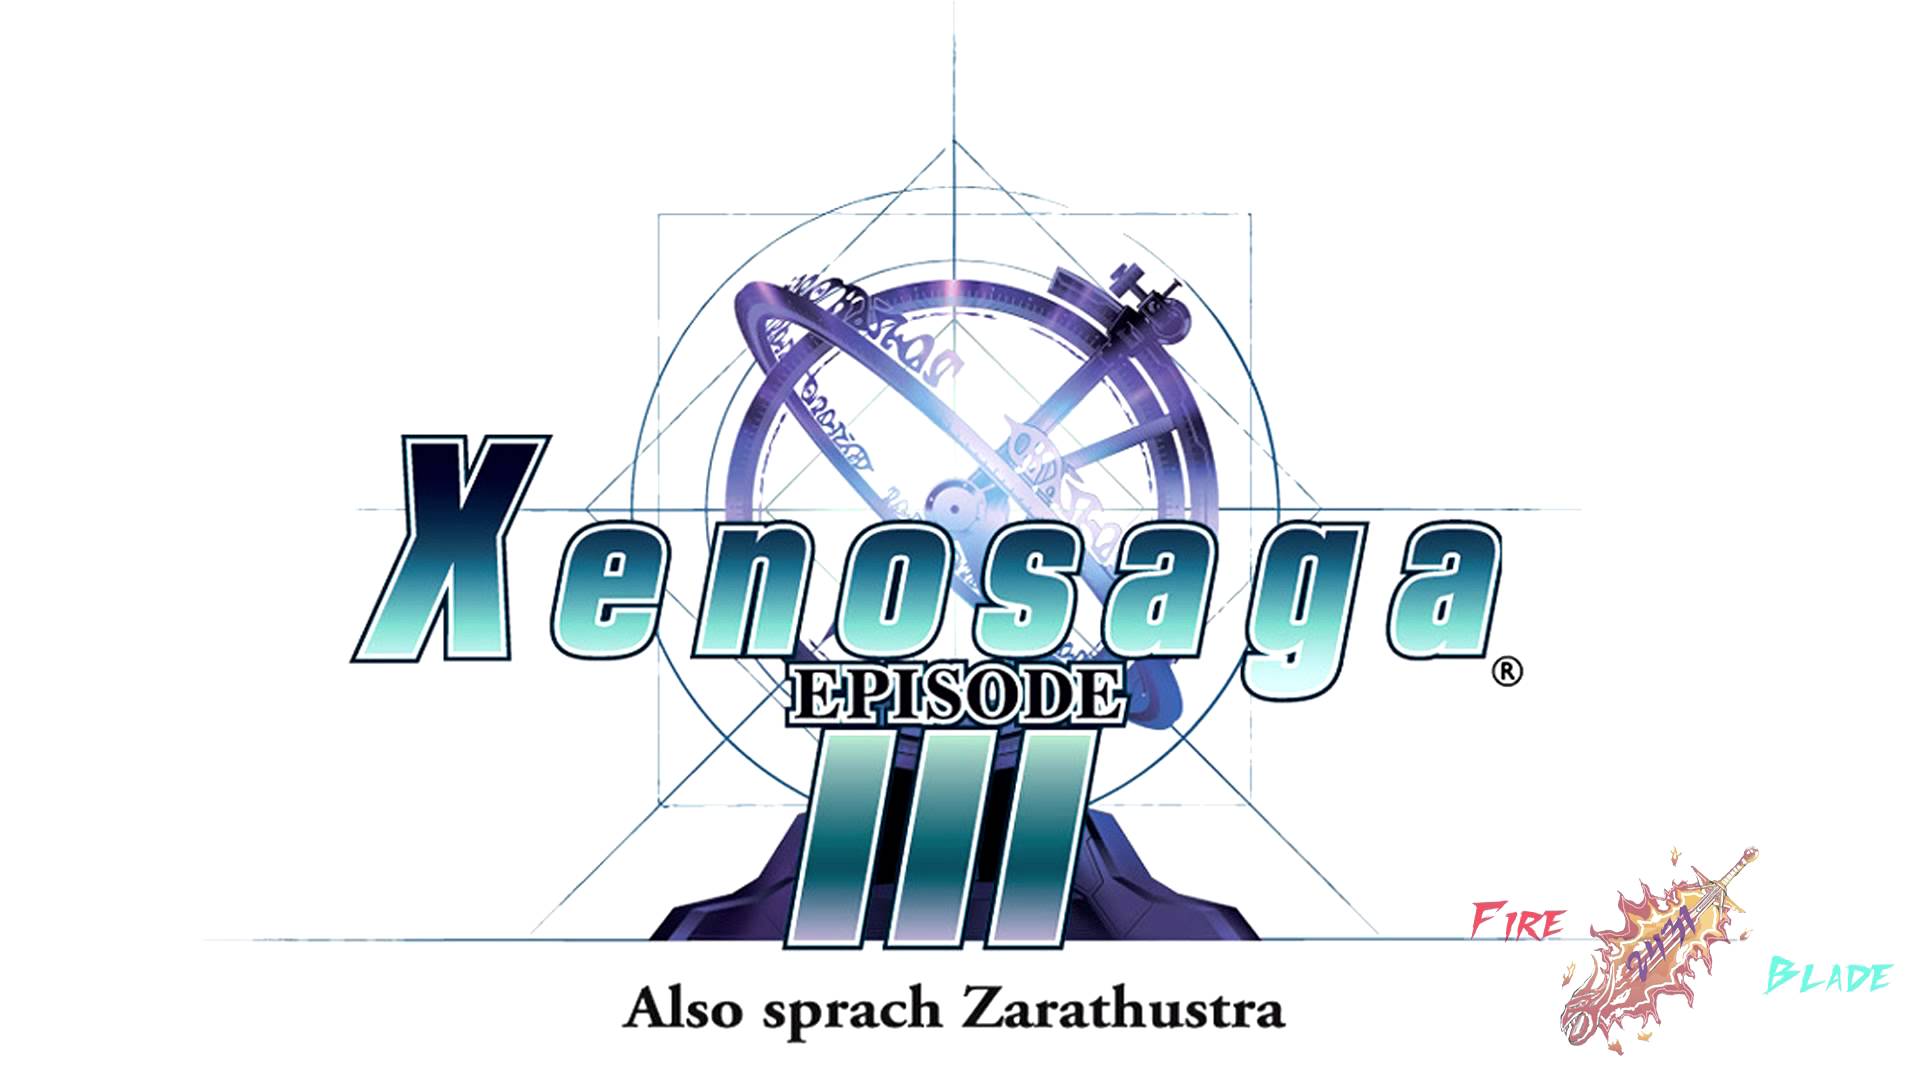 Xenosaga Episode III: Also Sprach Zarathustra Backgrounds, Compatible - PC, Mobile, Gadgets| 1920x1080 px